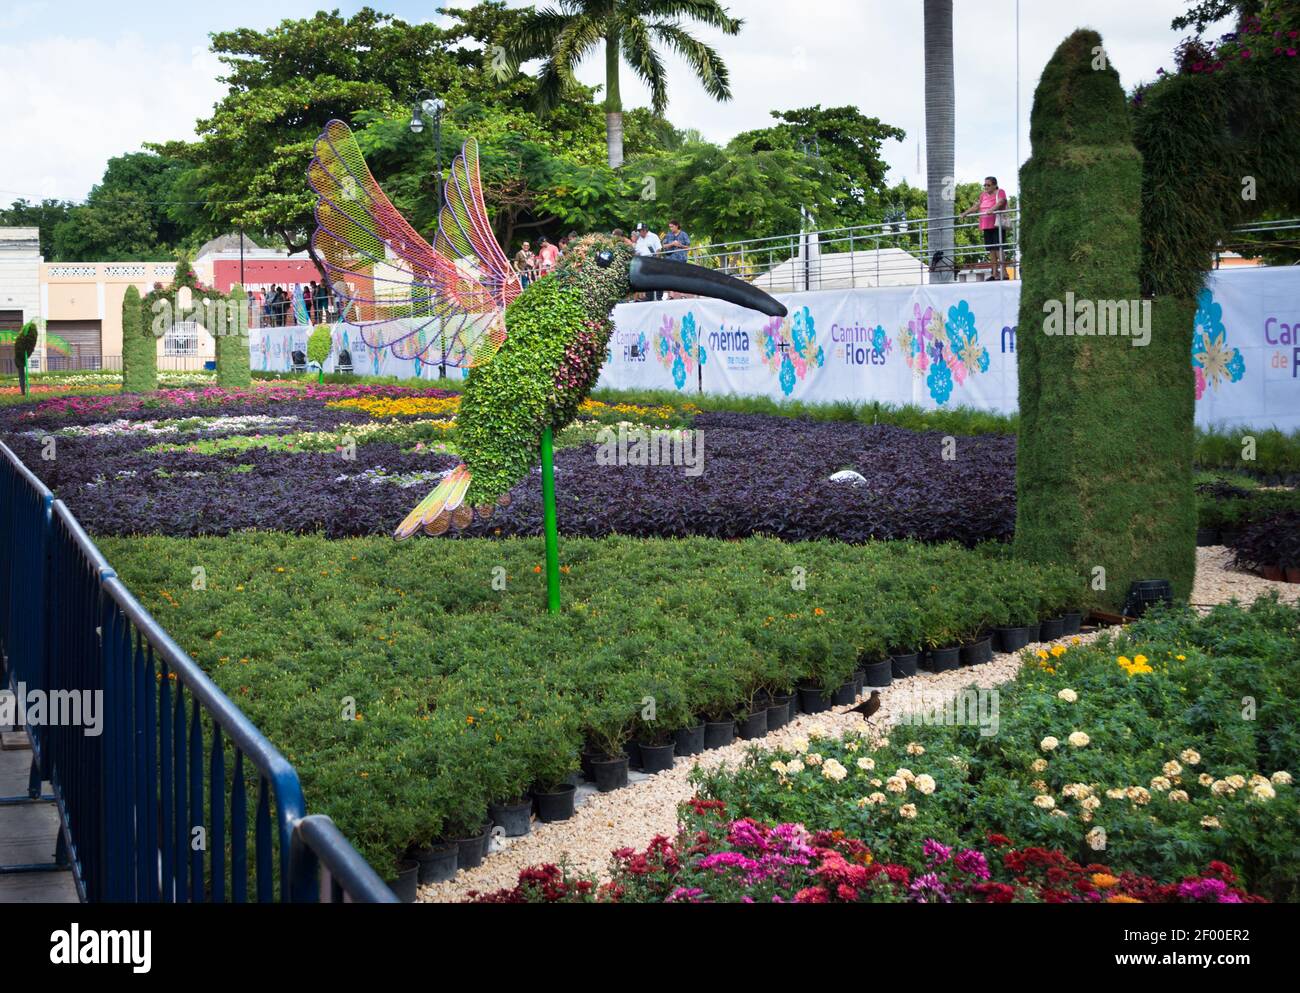 Exposición de escultura floral y vegetal en Mérida, Yucatán, México. La escultura de la planta del colibrí está rodeada de camas de flores. Foto de stock